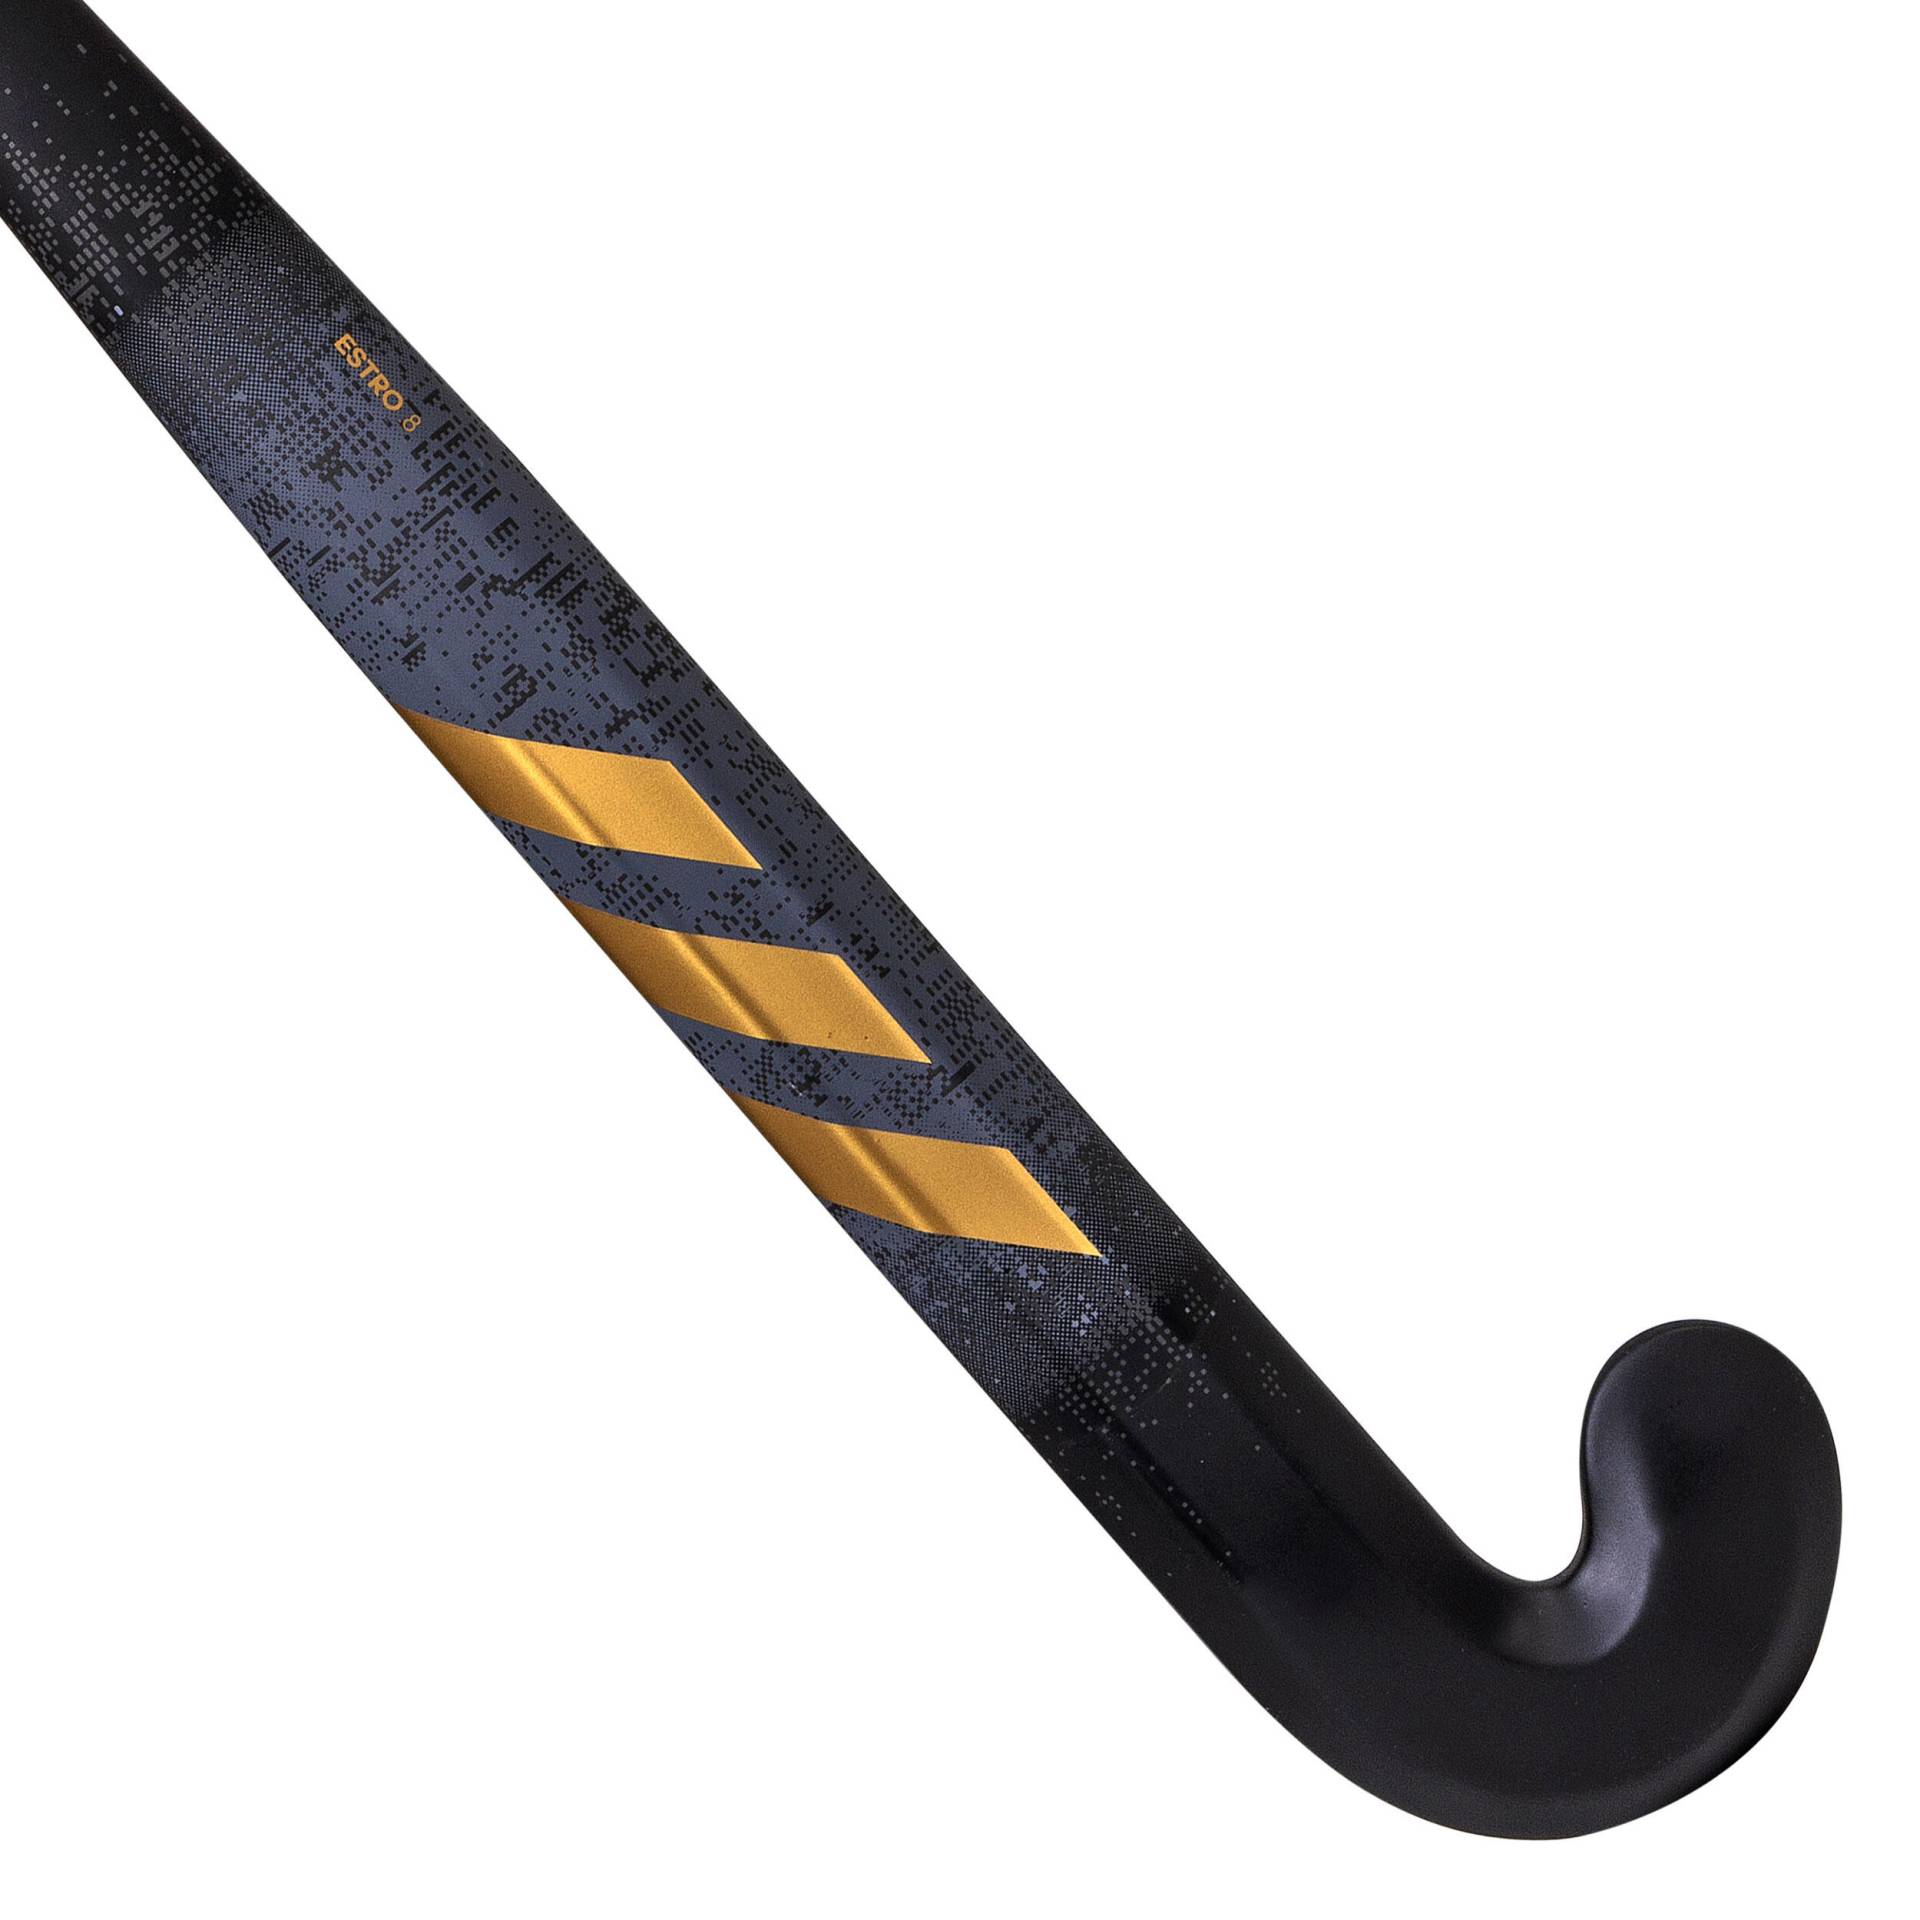 Jugendliche Feldhockeyschläger Glasfaser Mid Bow - Estro 8schwarz/gold von Adidas